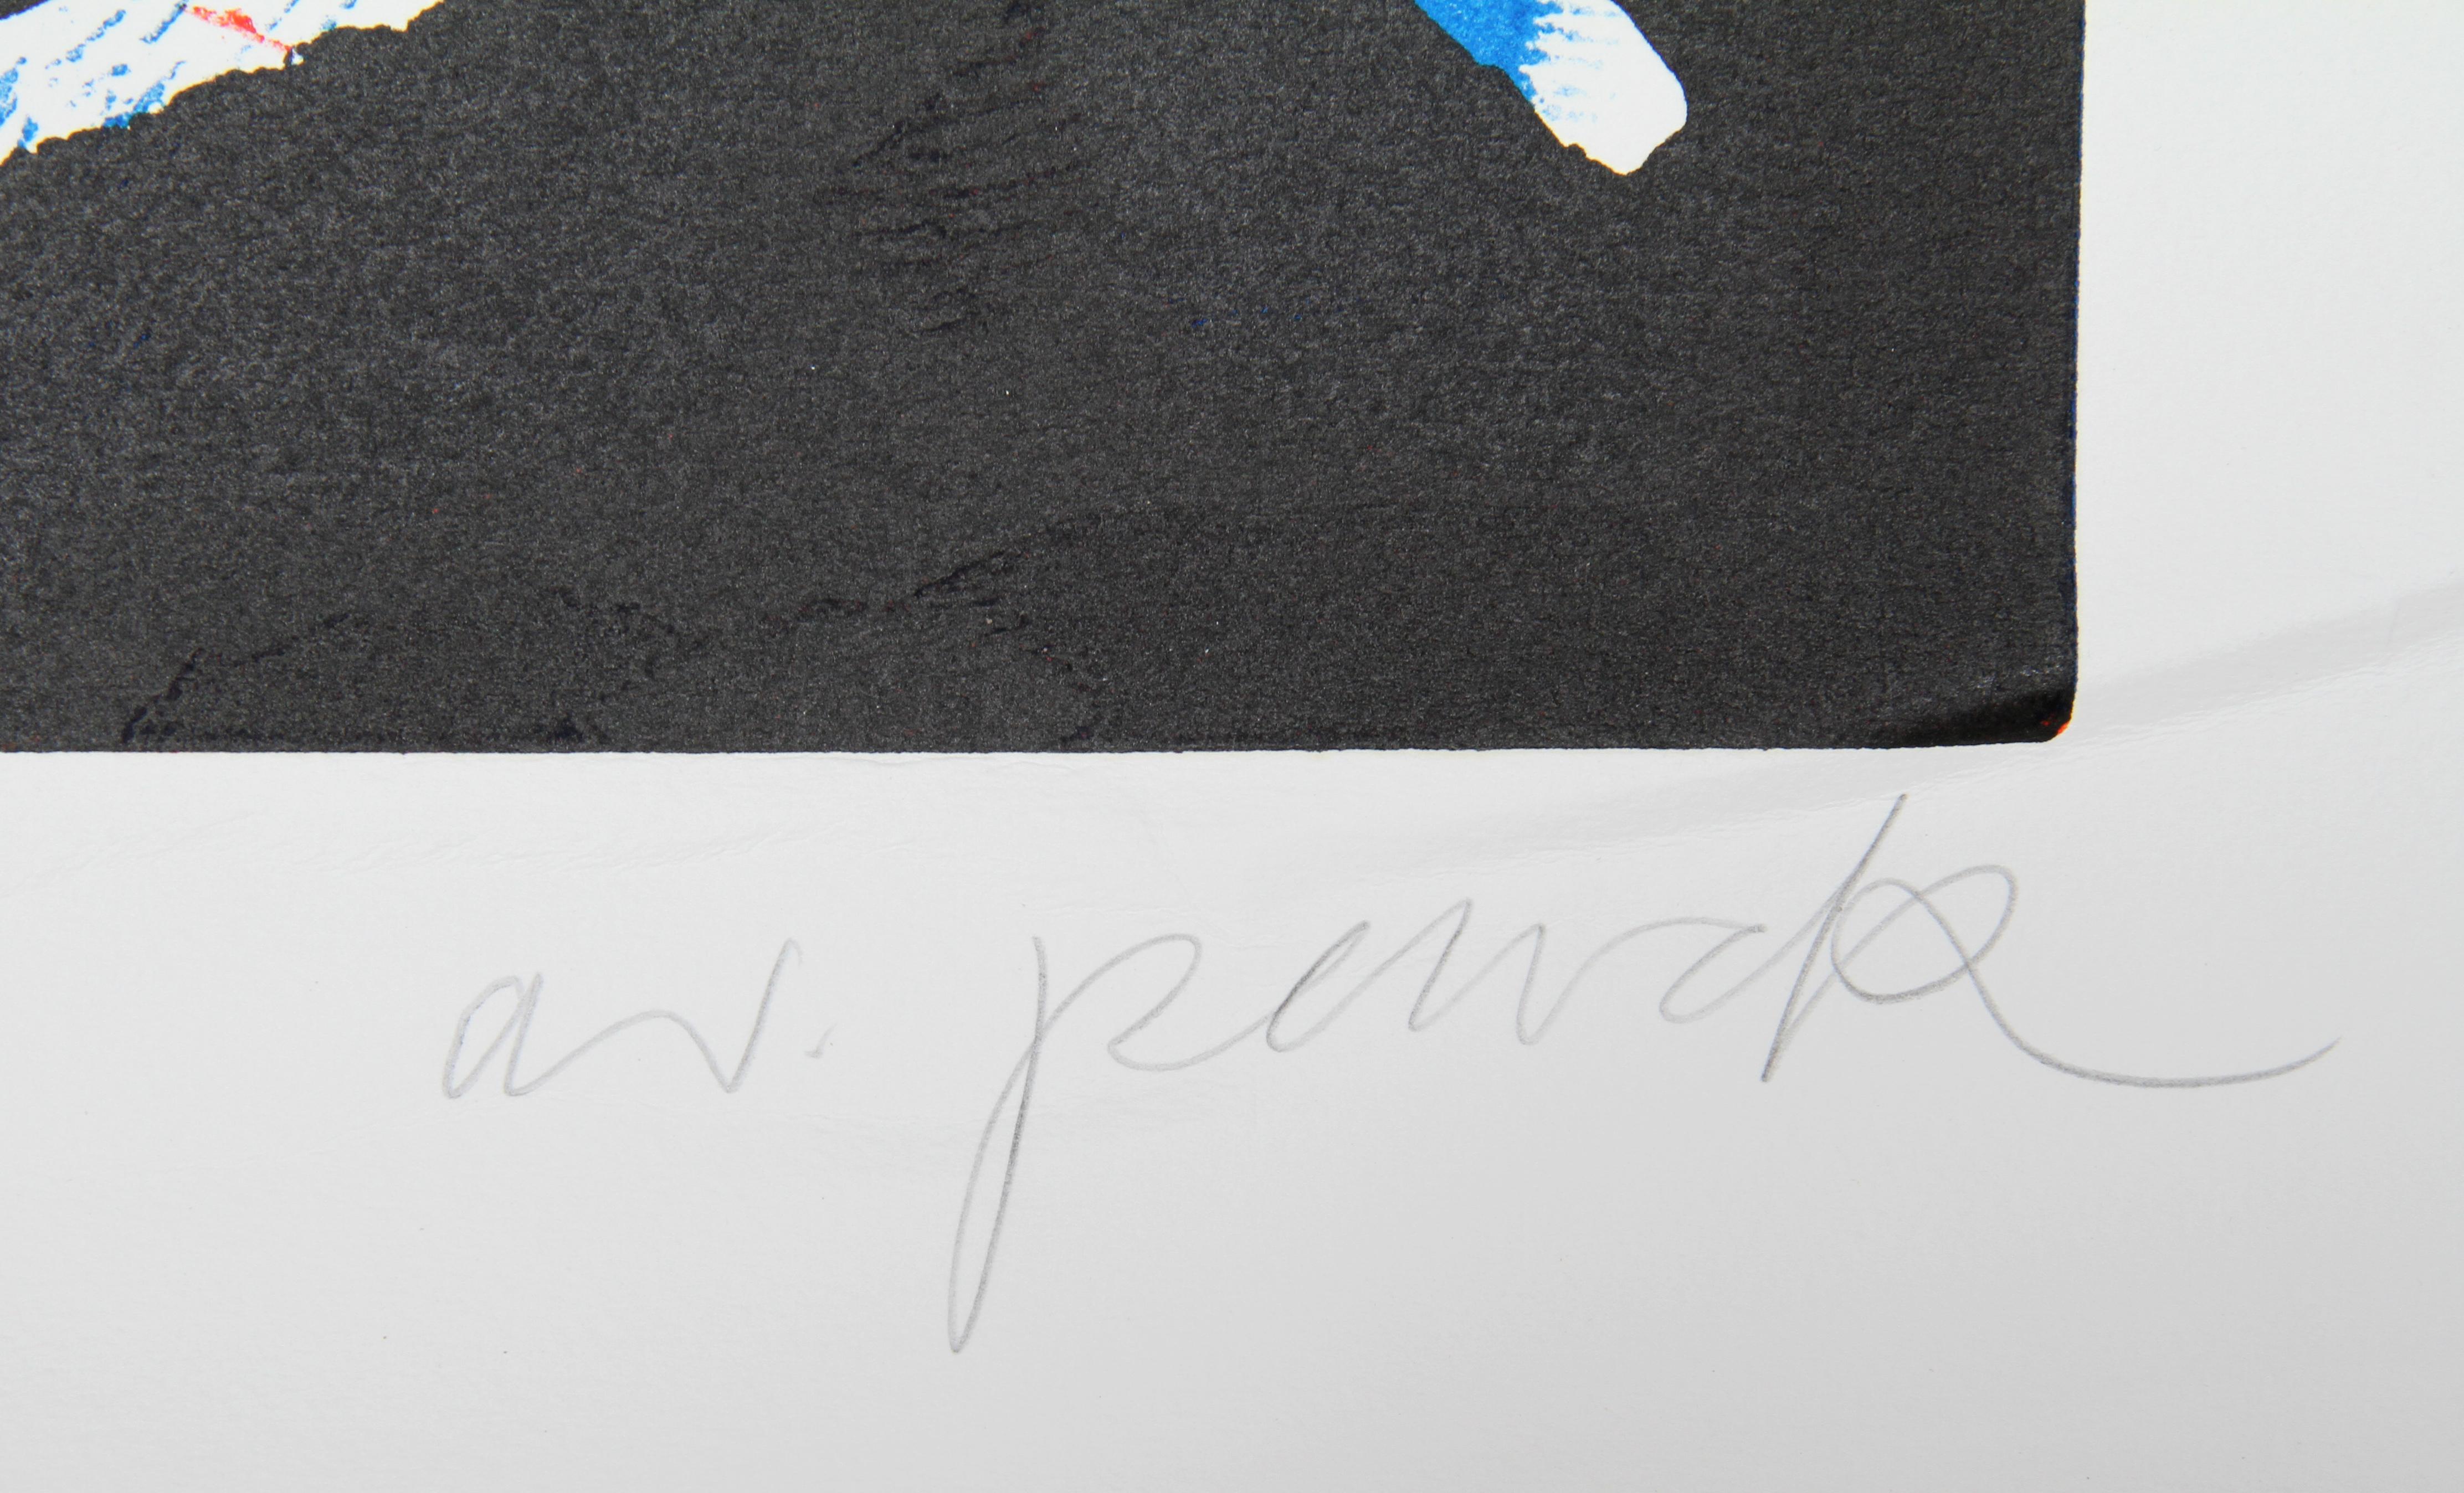 Mul, Bul Dang & Sentimentality, Abstrakter Holzschnitt von A.R. Schreibtisch mit Stift (Abstrakter Expressionismus), Print, von A.R. Penck (Ralf Winkler)